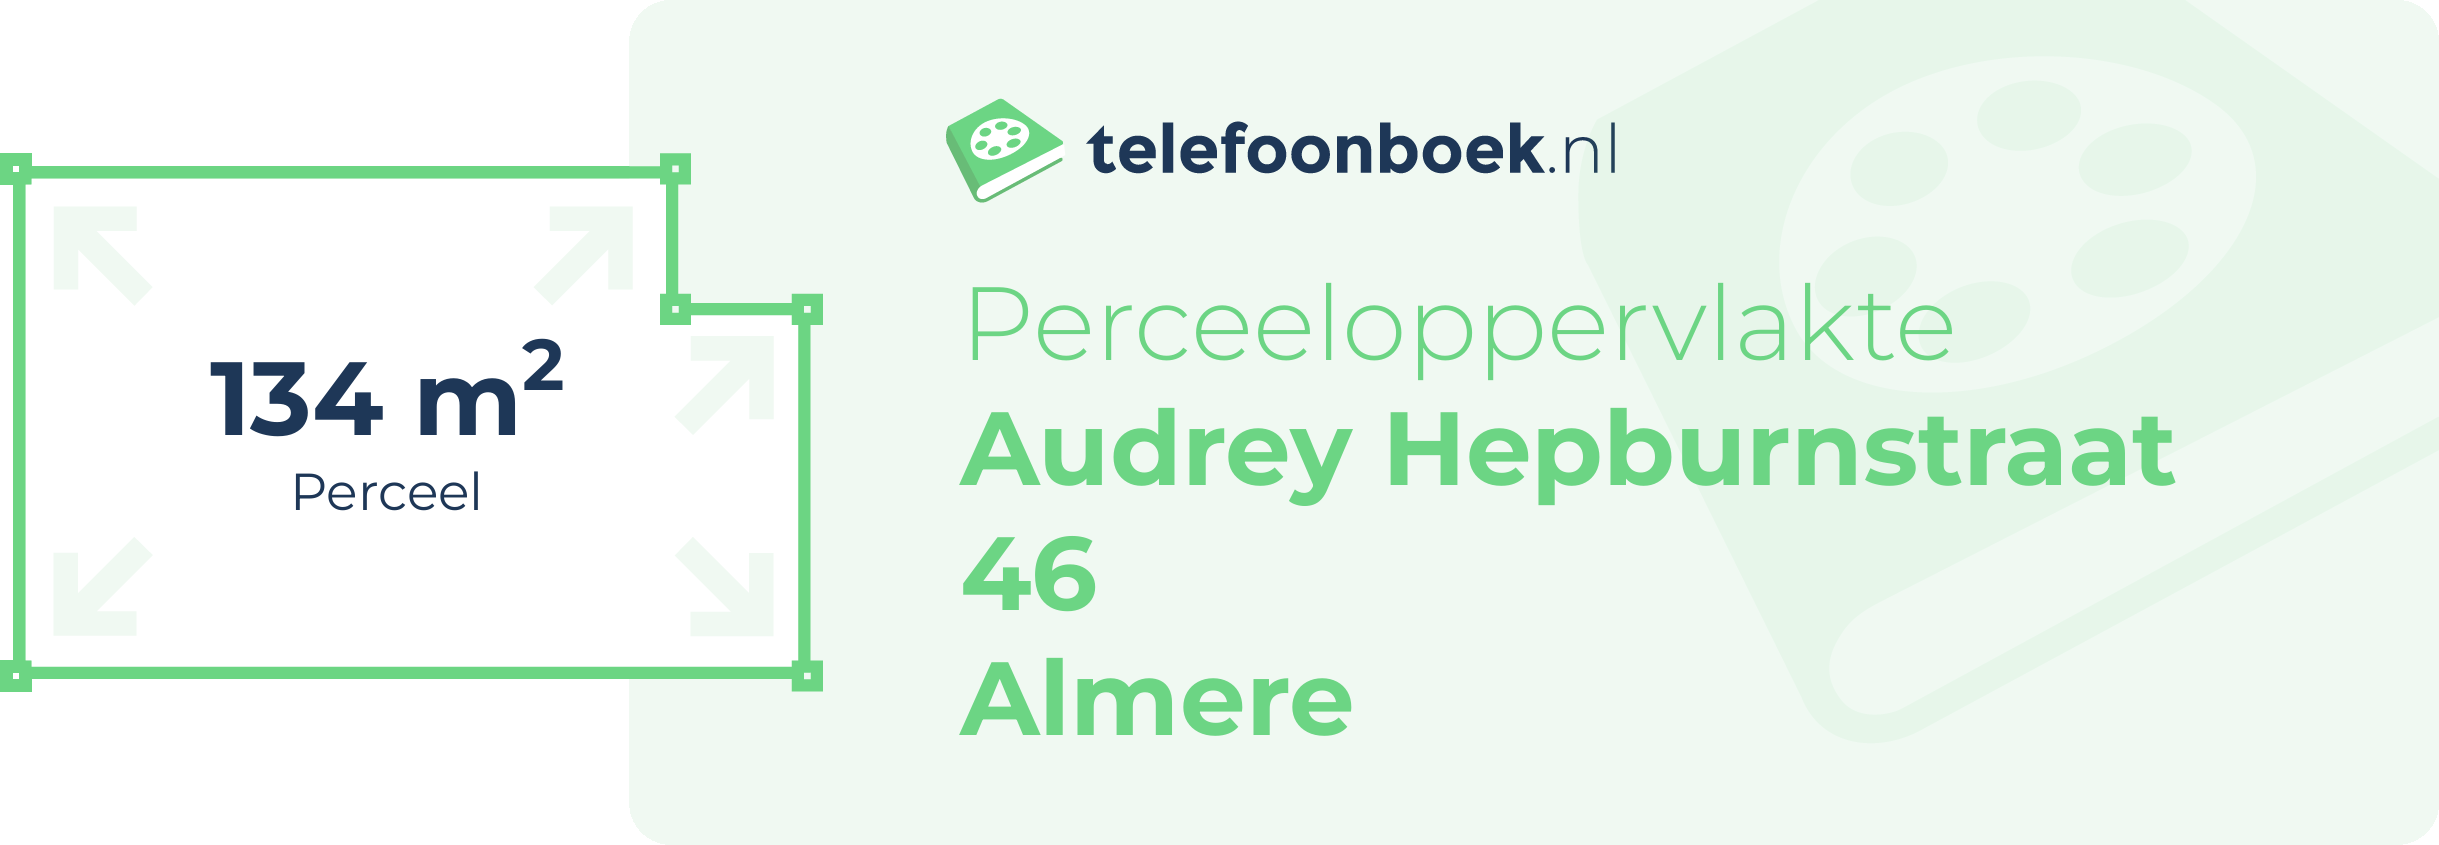 Perceeloppervlakte Audrey Hepburnstraat 46 Almere